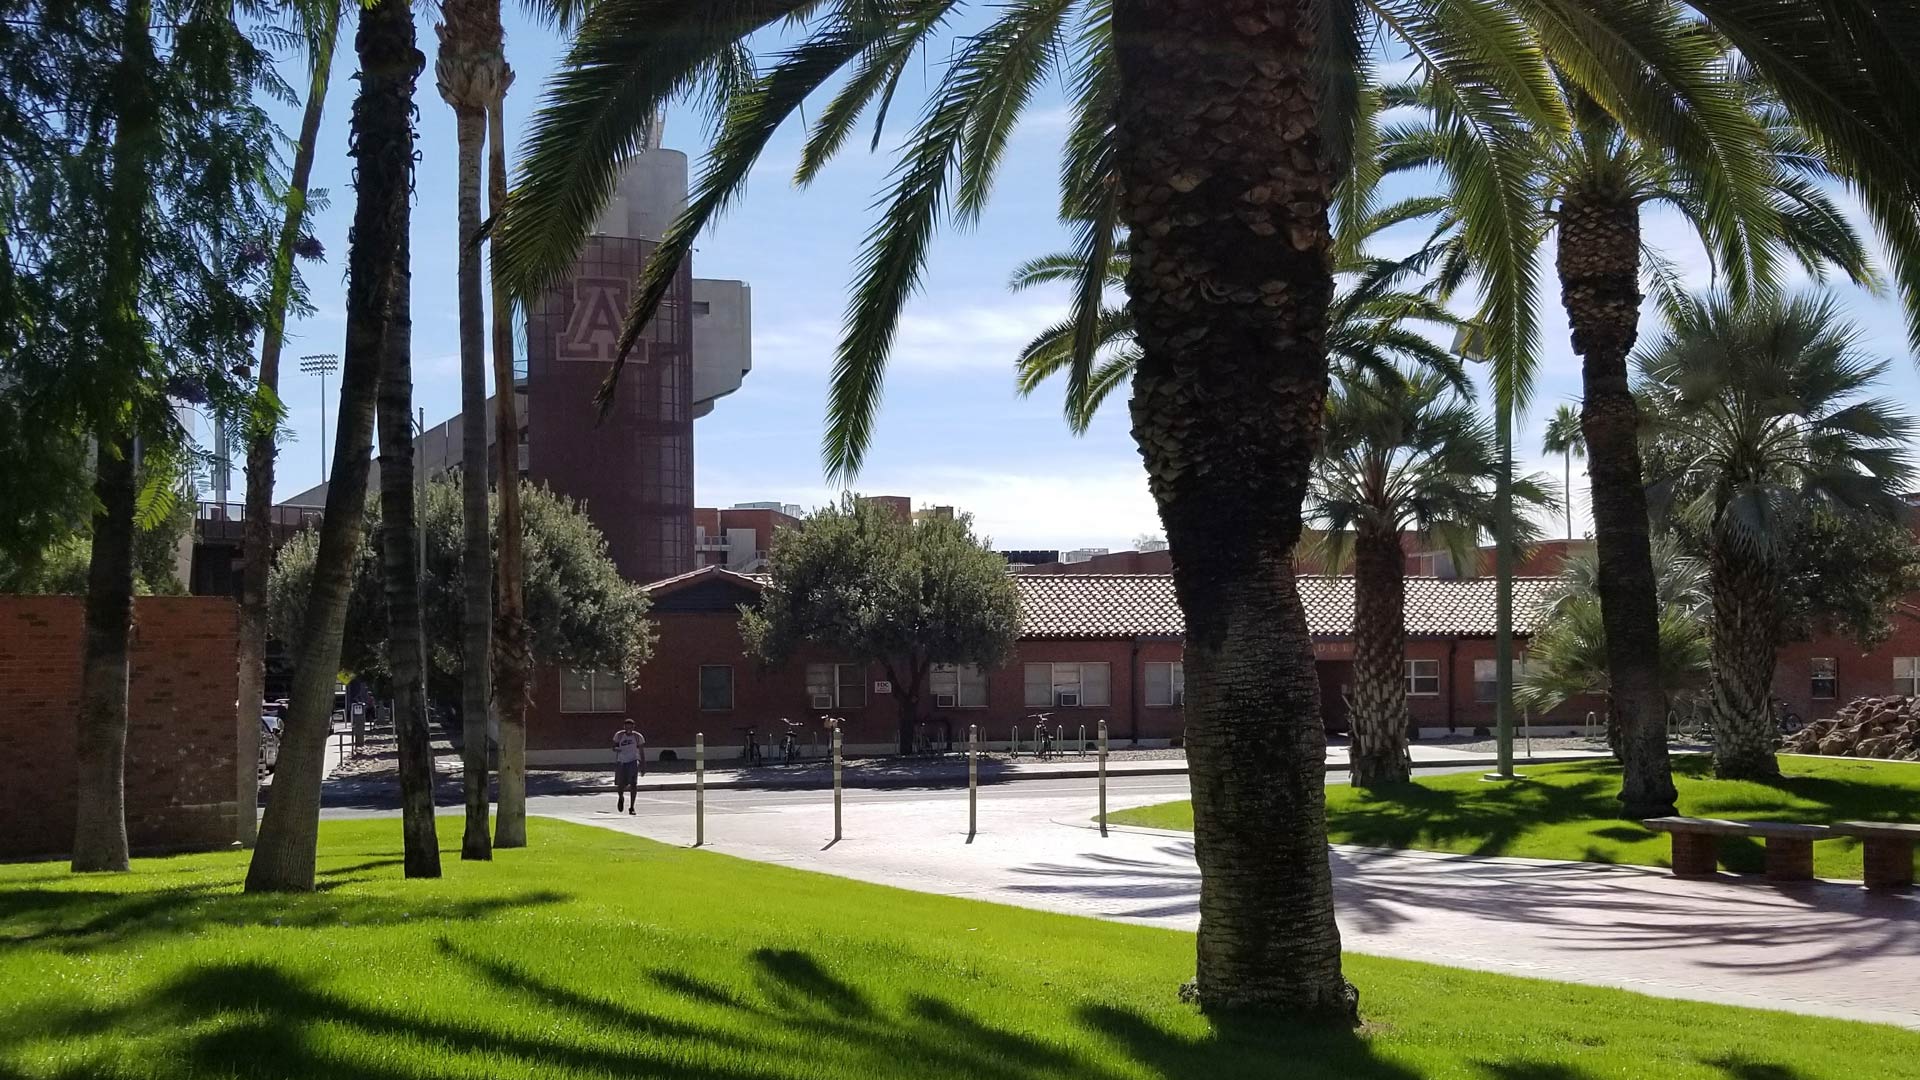 A shady, grassy area of the University of Arizona campus, facing south towards Arizona Stadium.